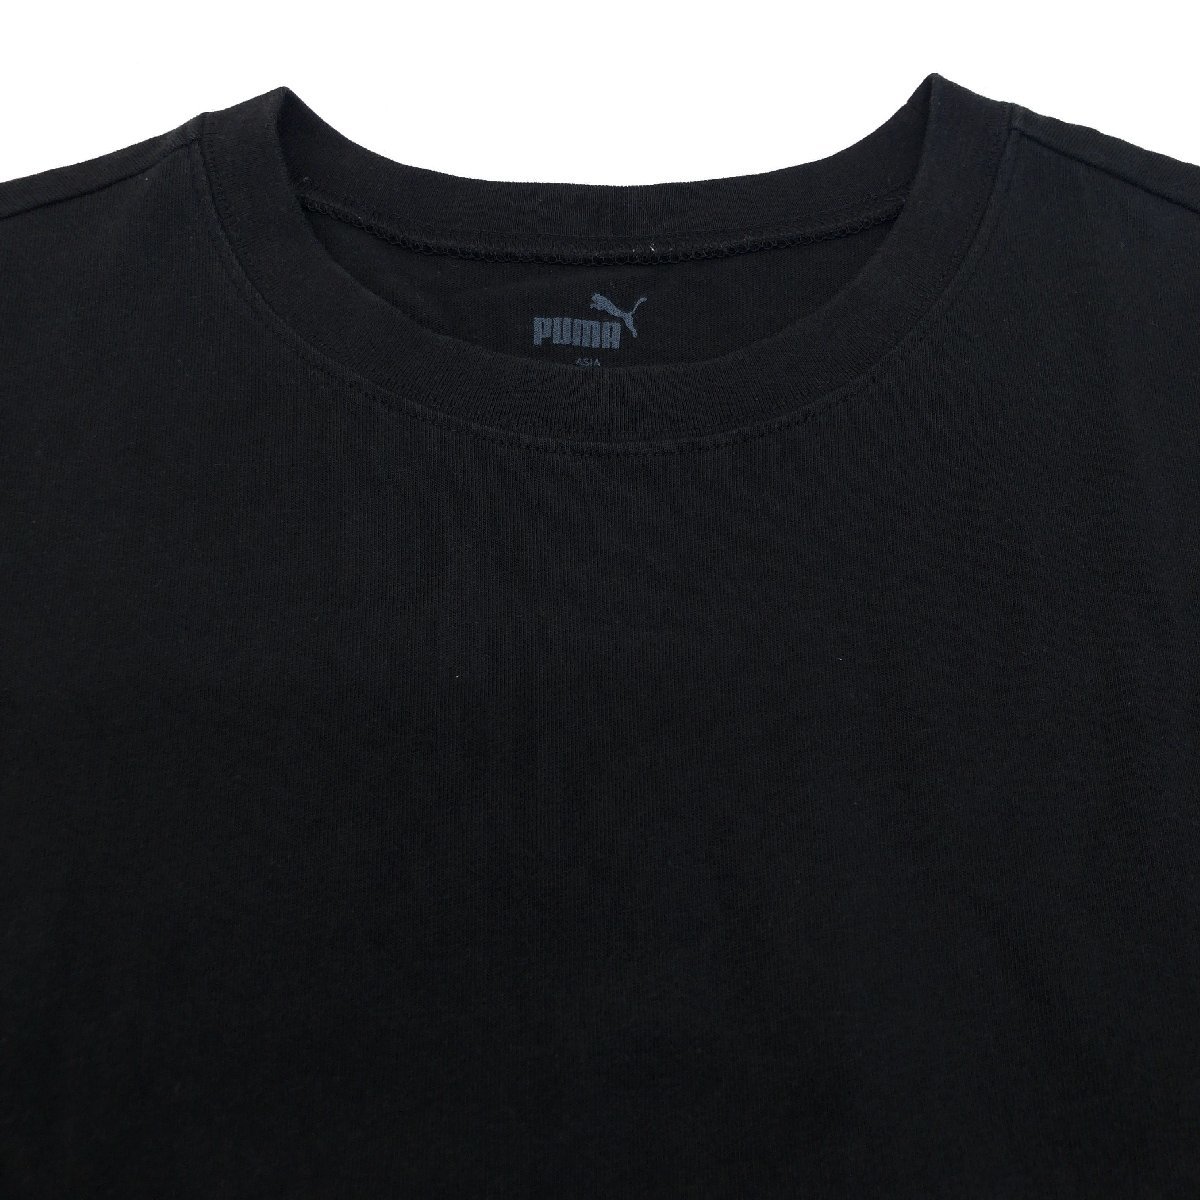 PUMA プーマ ロゴプリント ポケット Tシャツ S 黒 ブラック 半袖 国内正規品 メンズ 紳士_画像5